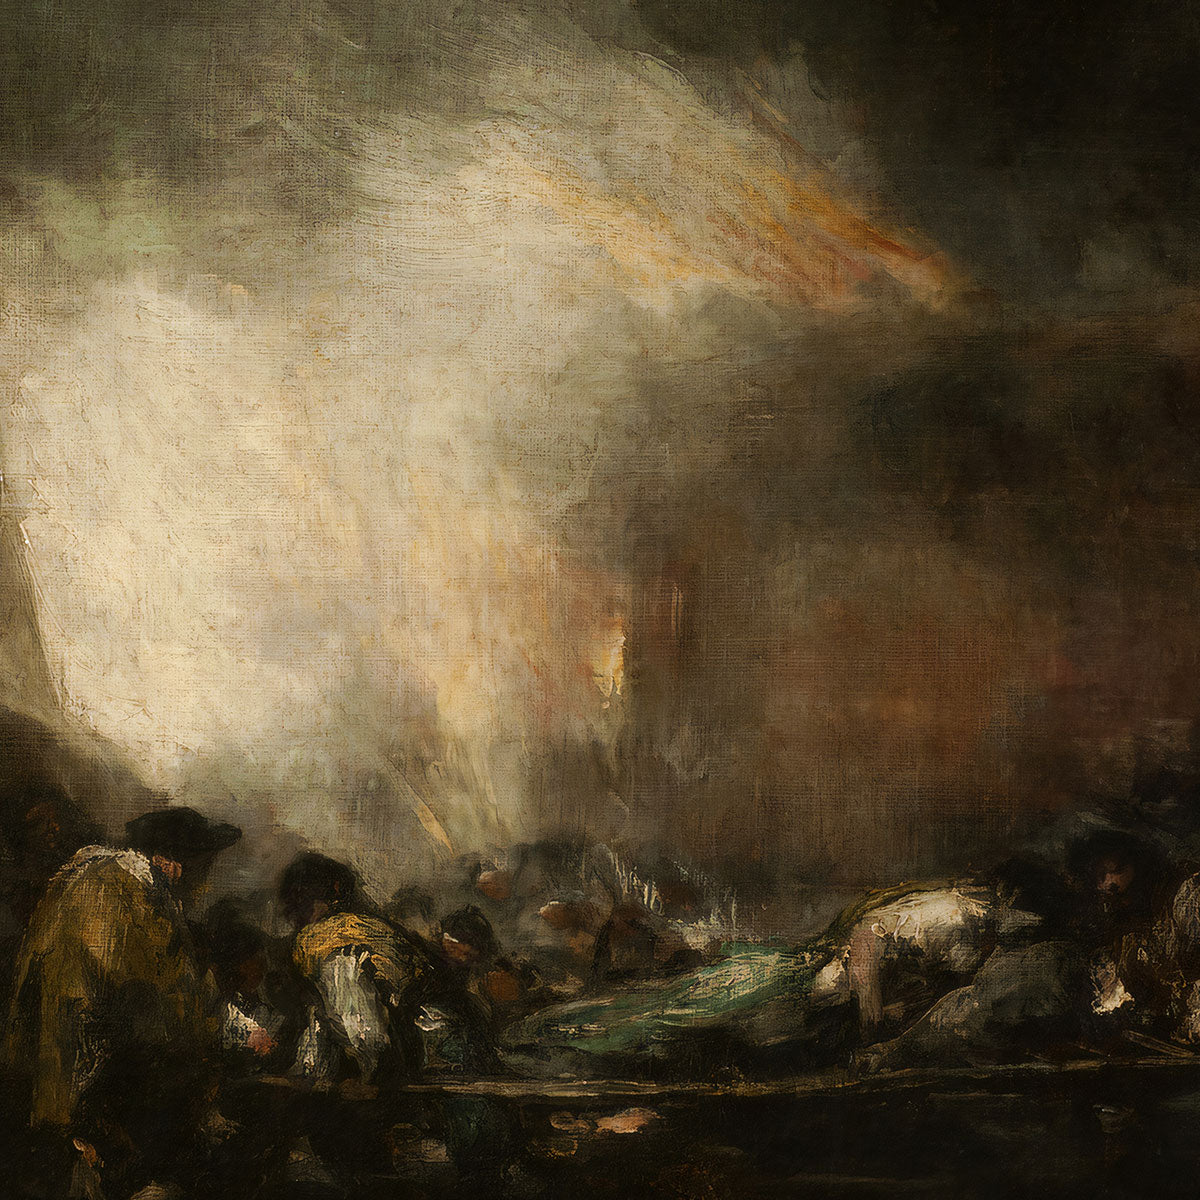 Incendio de un Hospital by Francisco de Goya